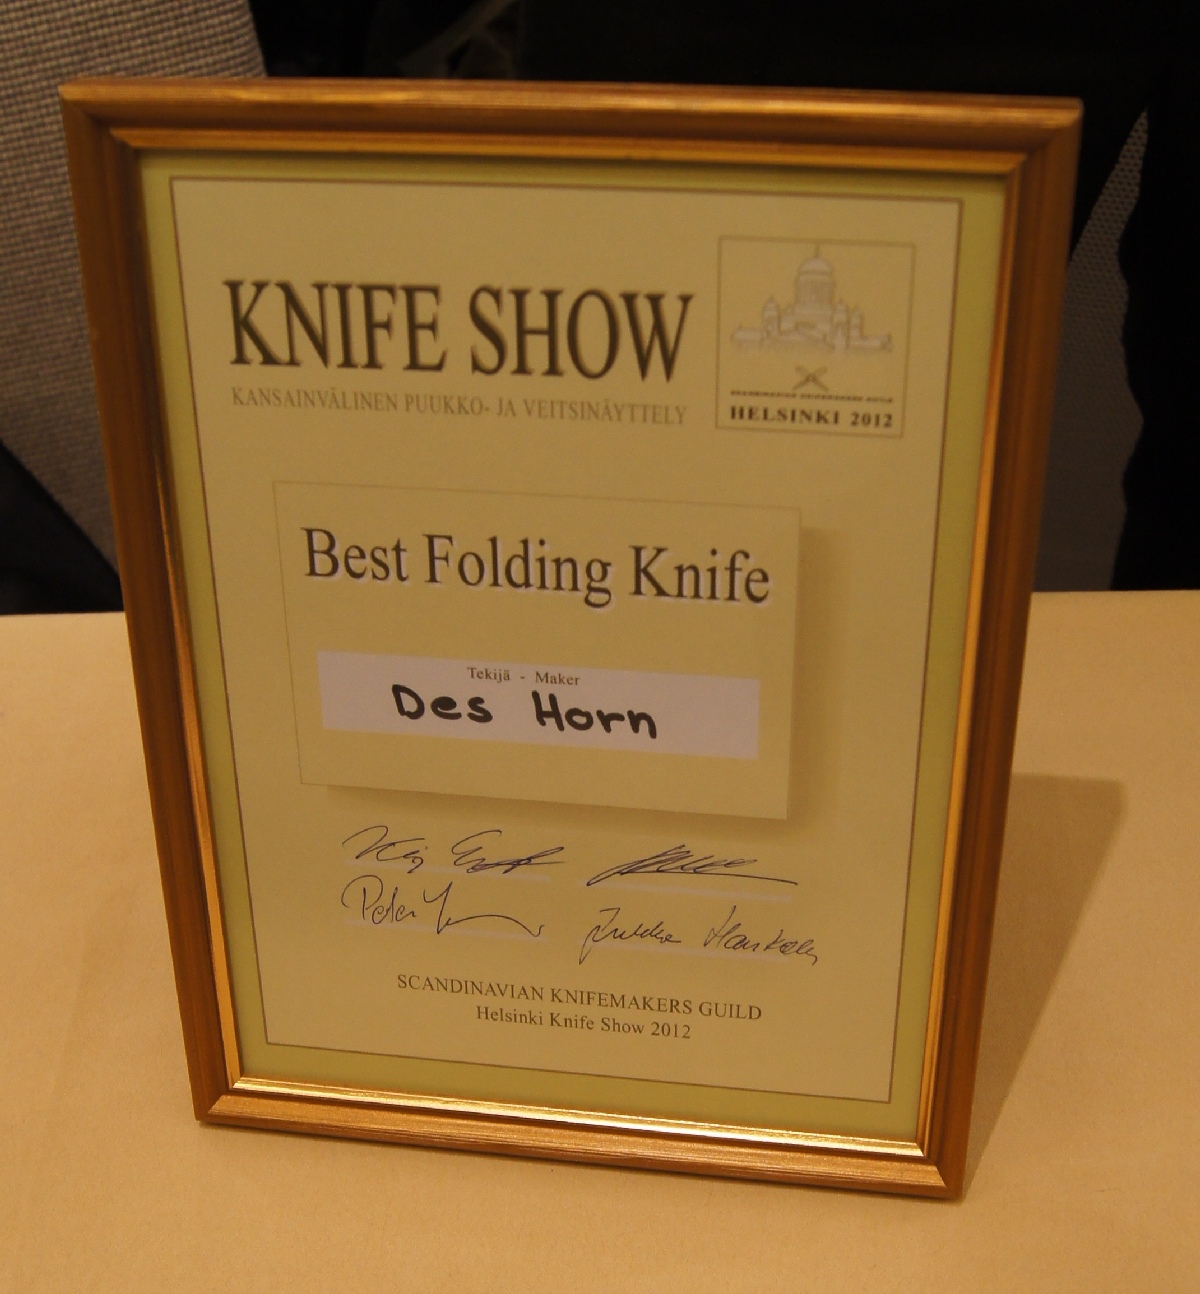 Des Horn. Helsinki Knife Show 2012.